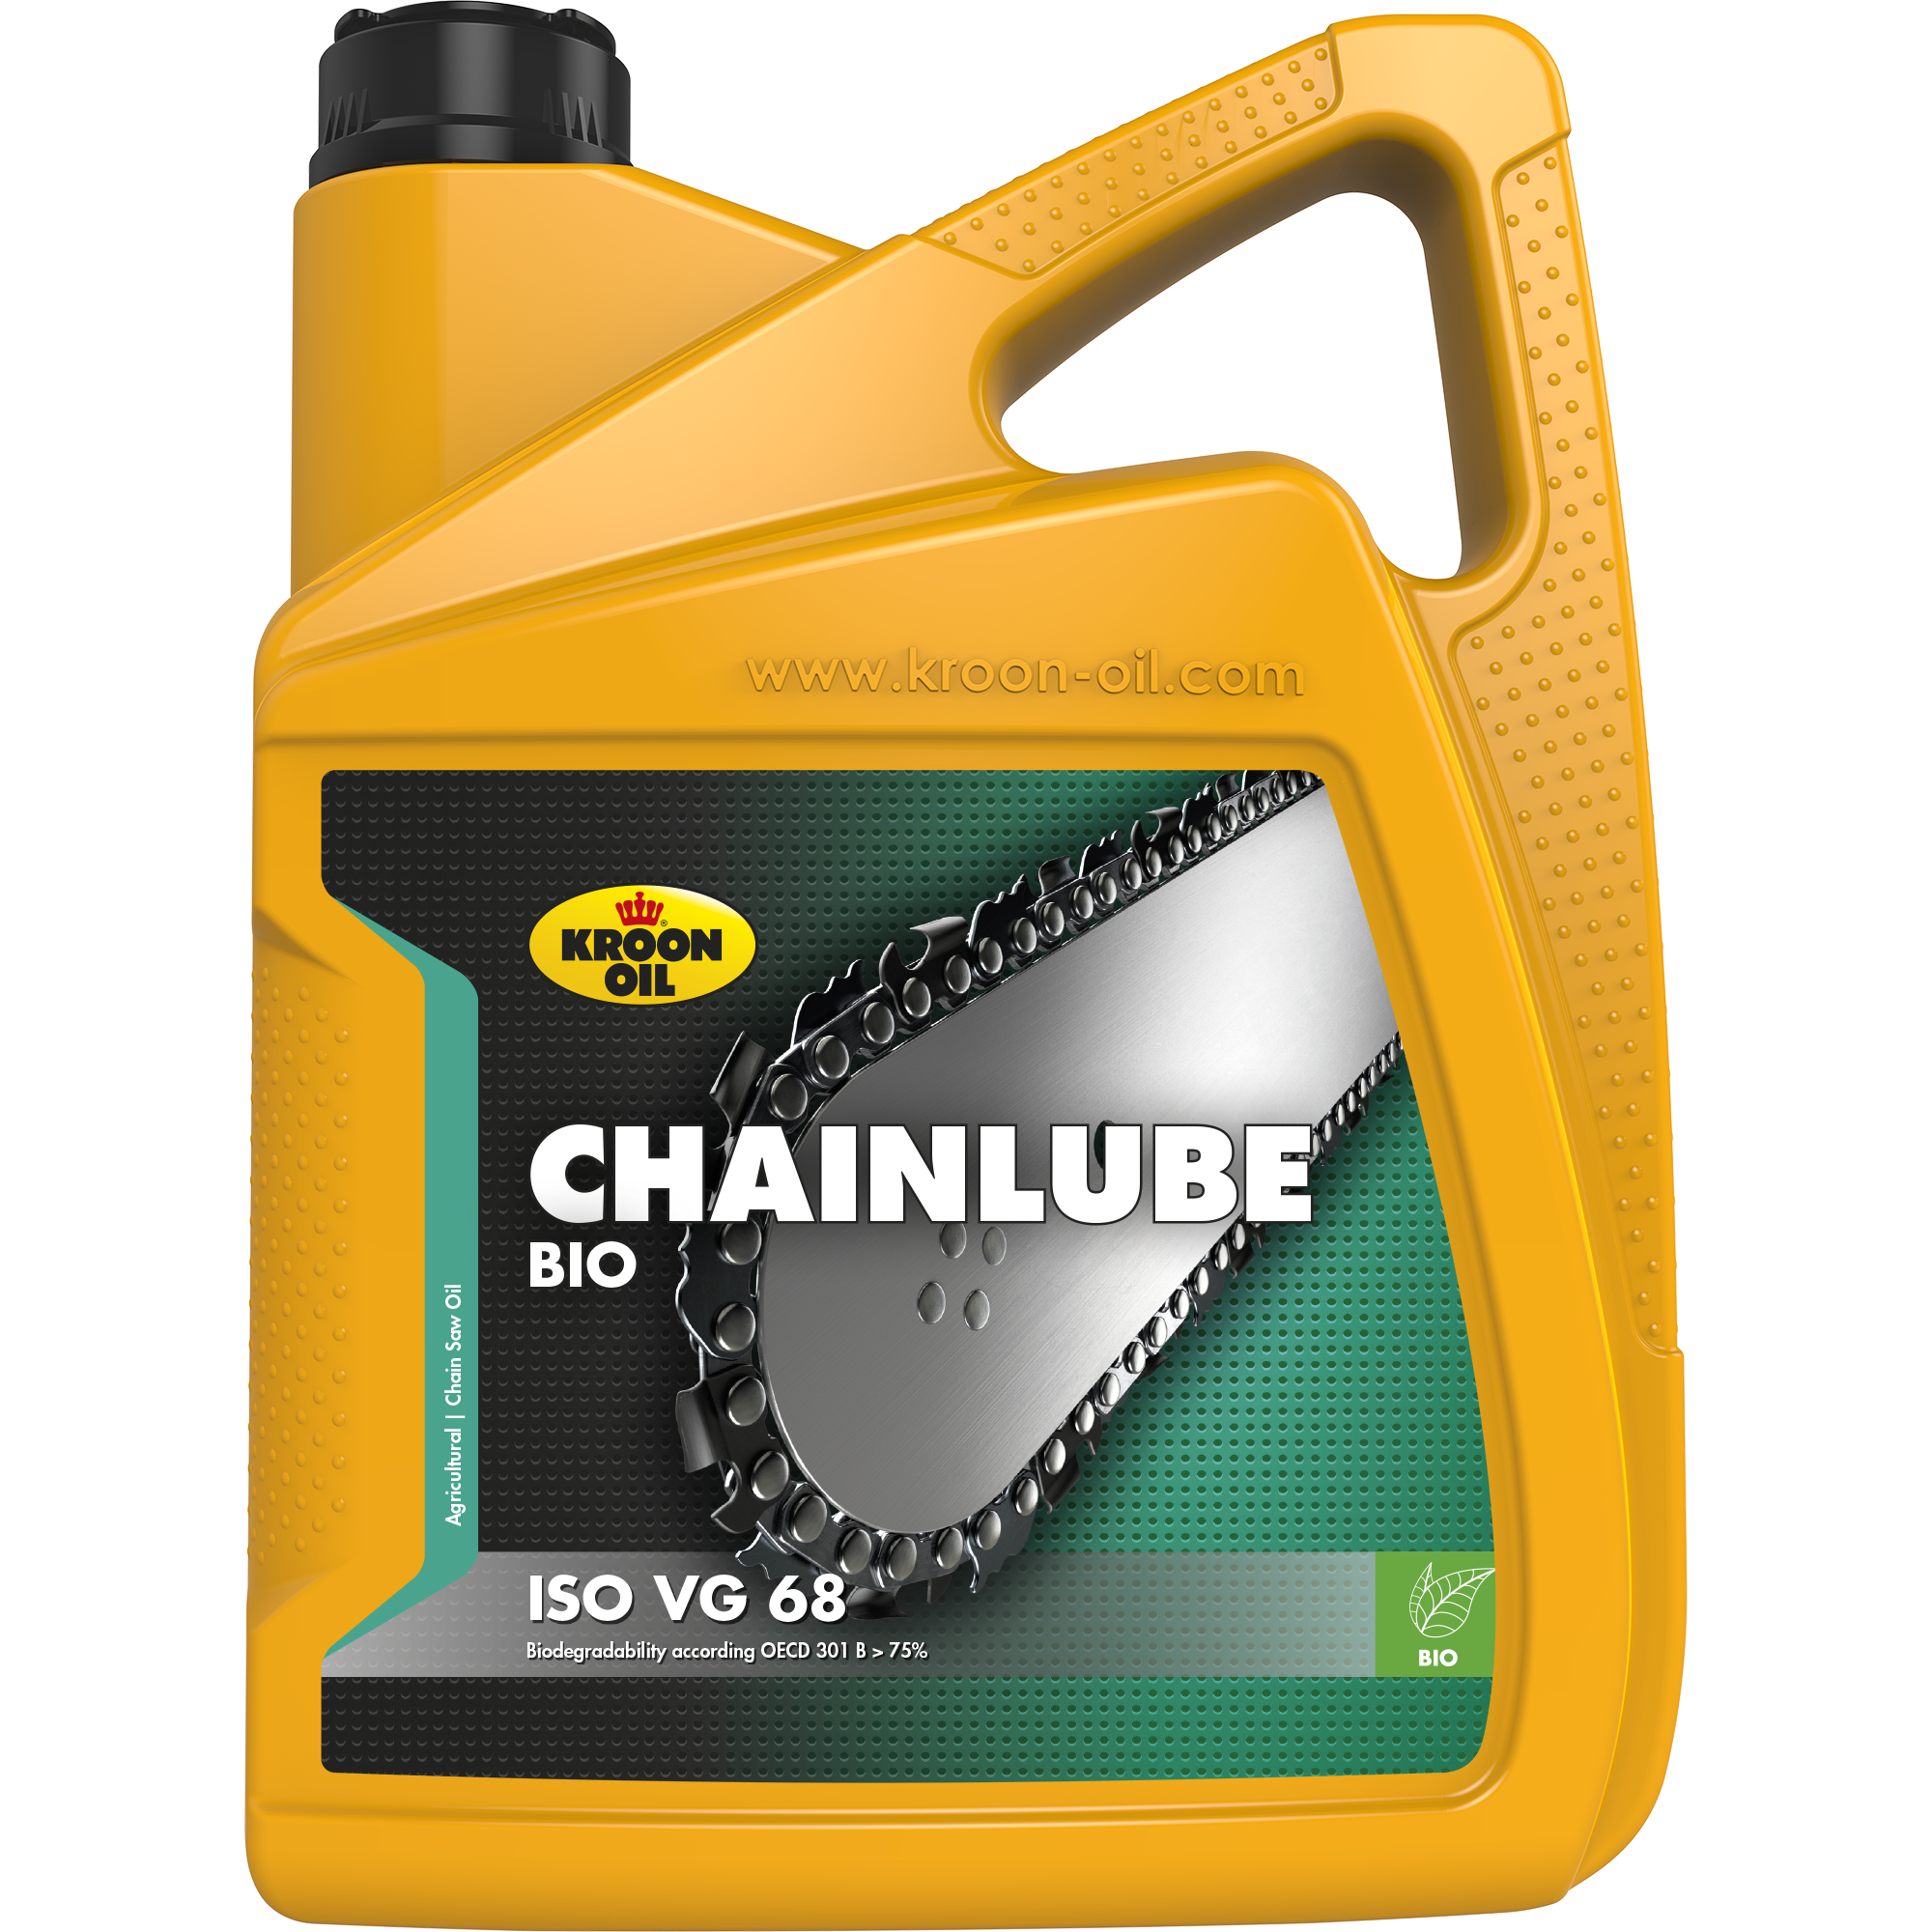 02306-5 Chainlube Bio is een kettingzaagolie, gebaseerd op volledig biologisch afbreekbare plantaardige olie.